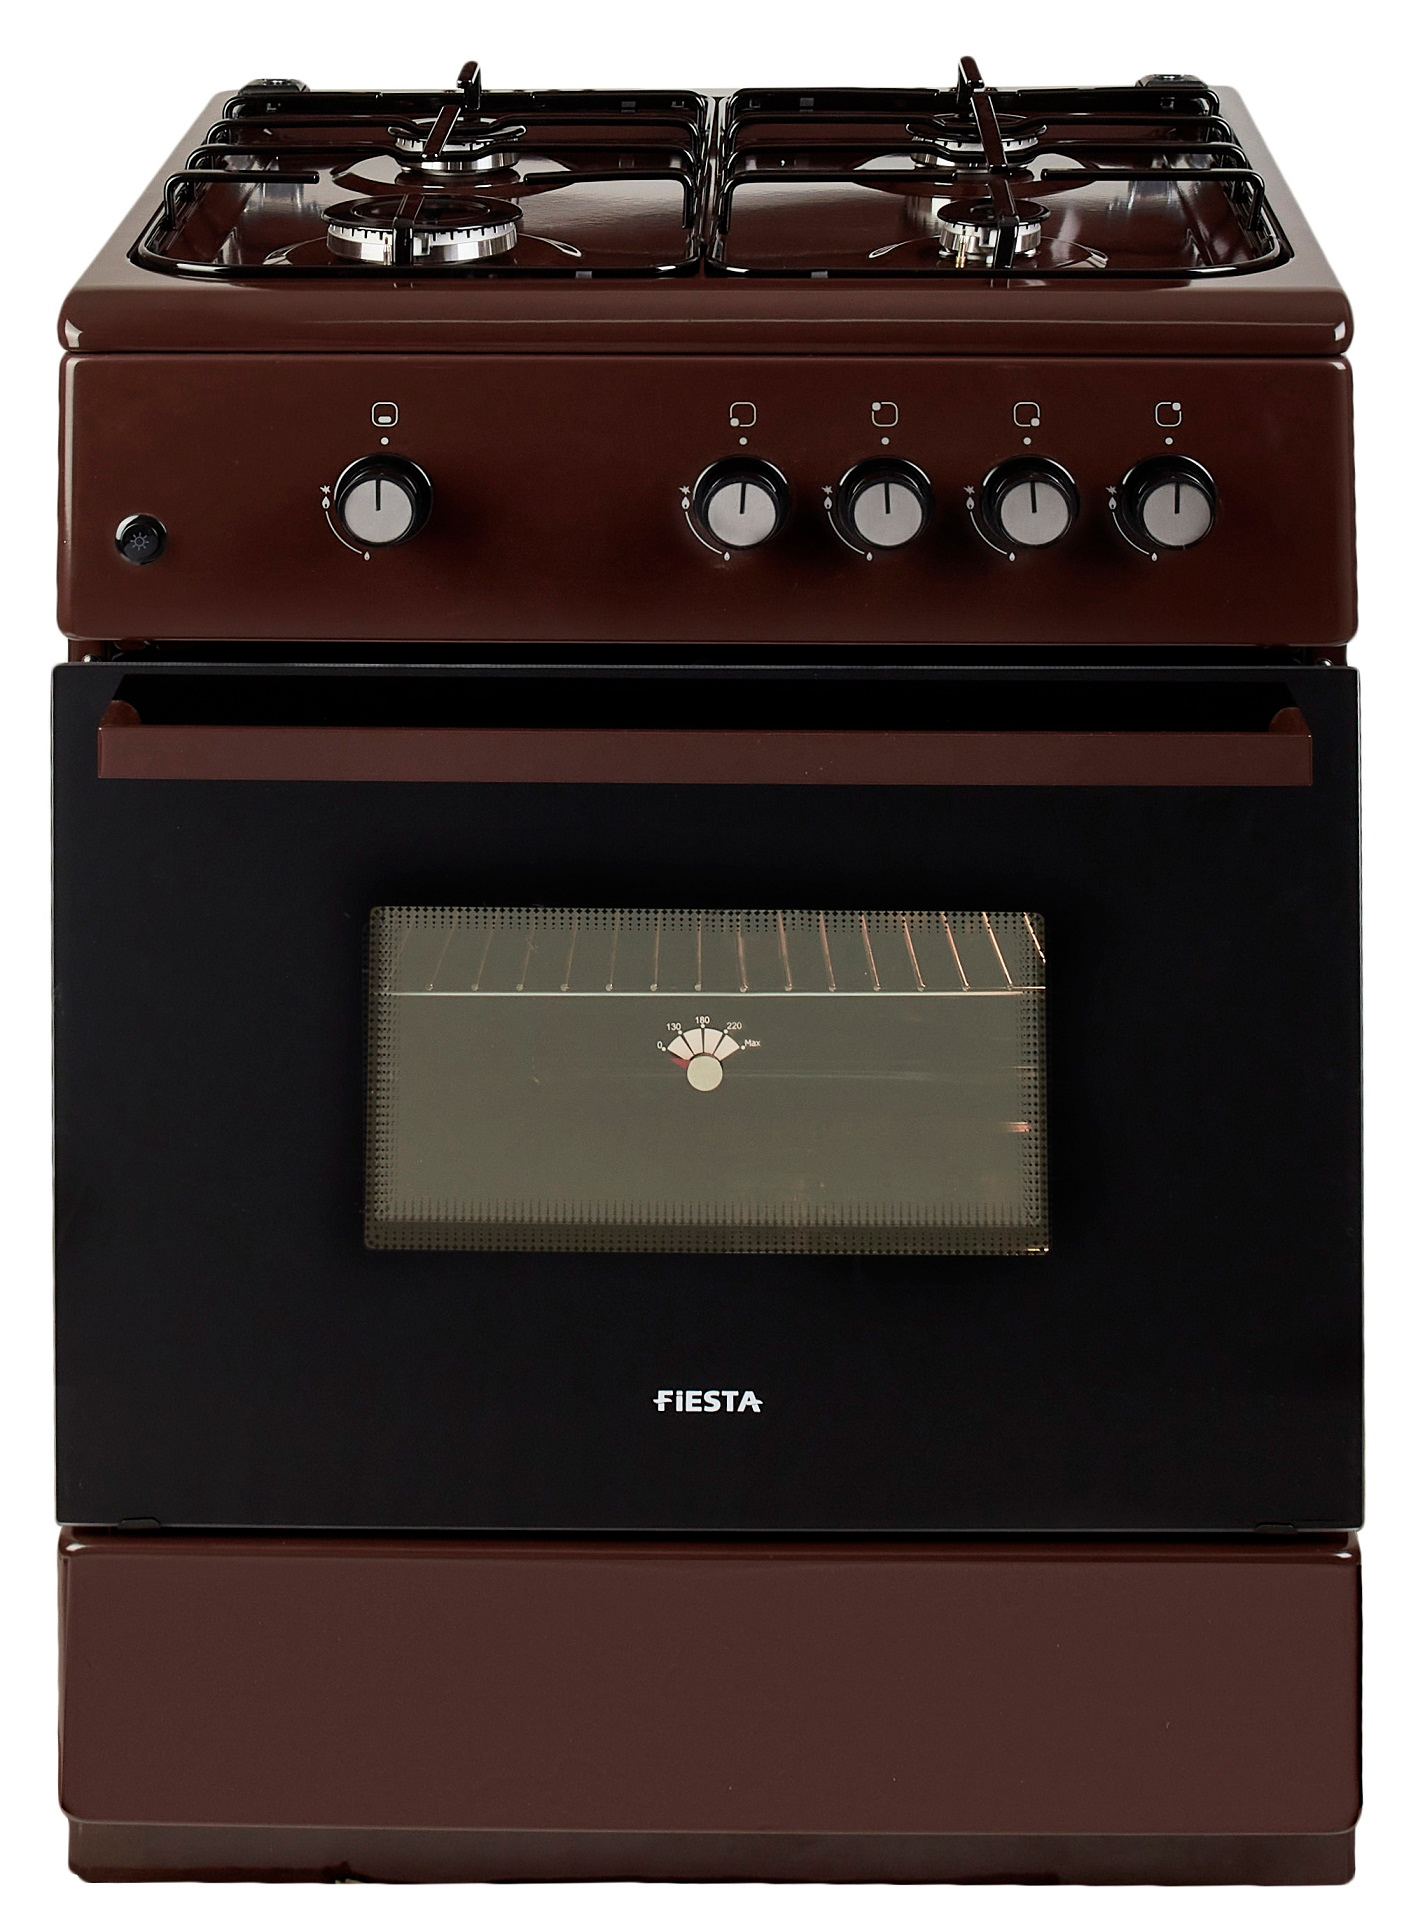 Кухонная плита Fiesta G 6403 SAD-B цена 10799.00 грн - фотография 2